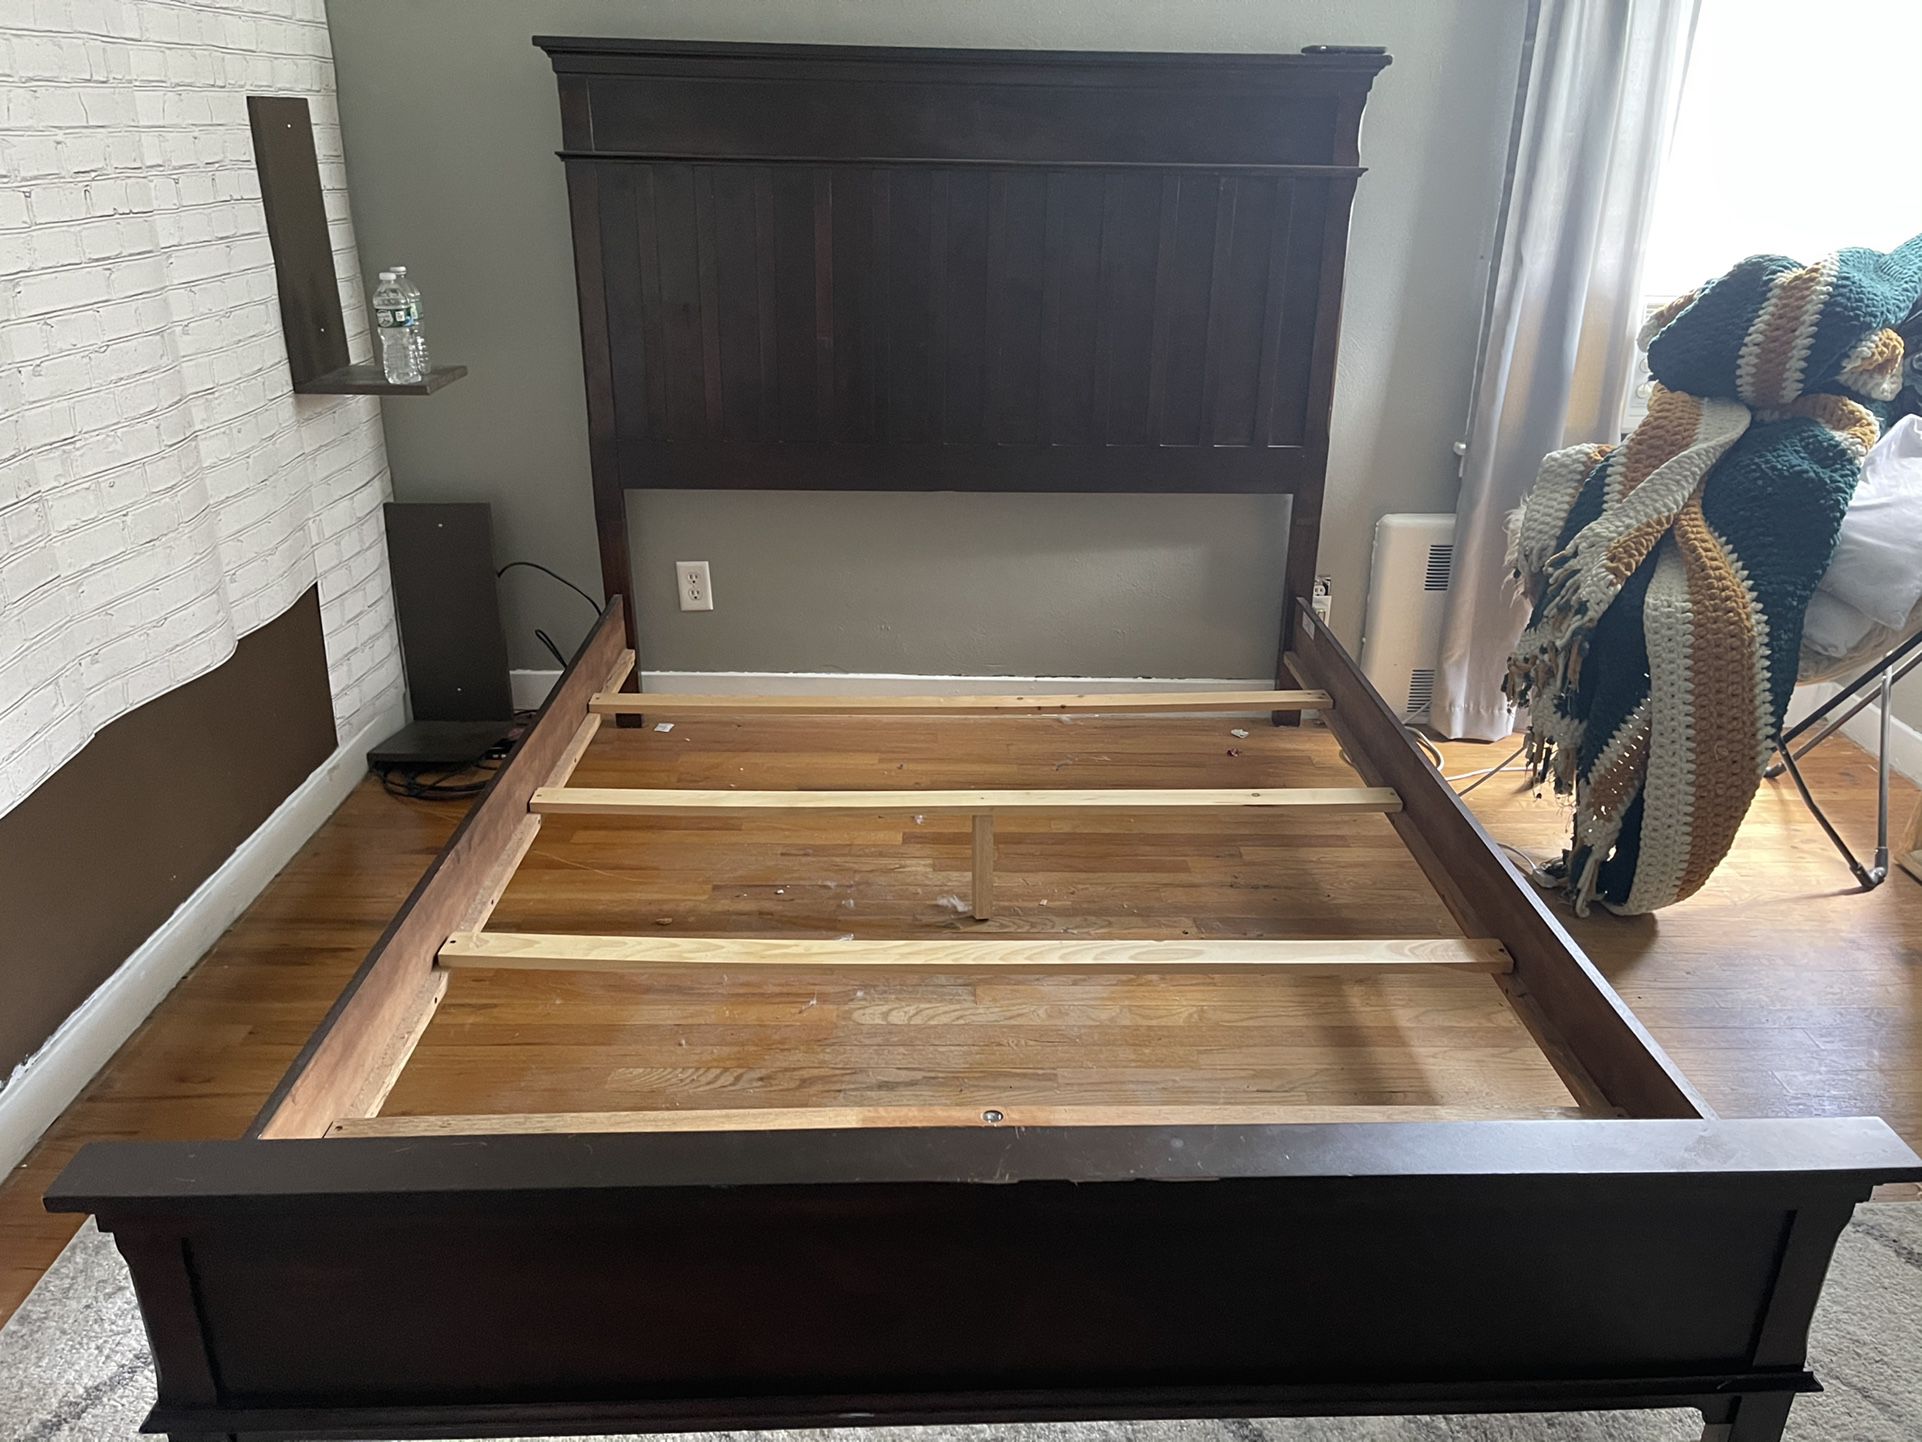 Wooden Bed Frame